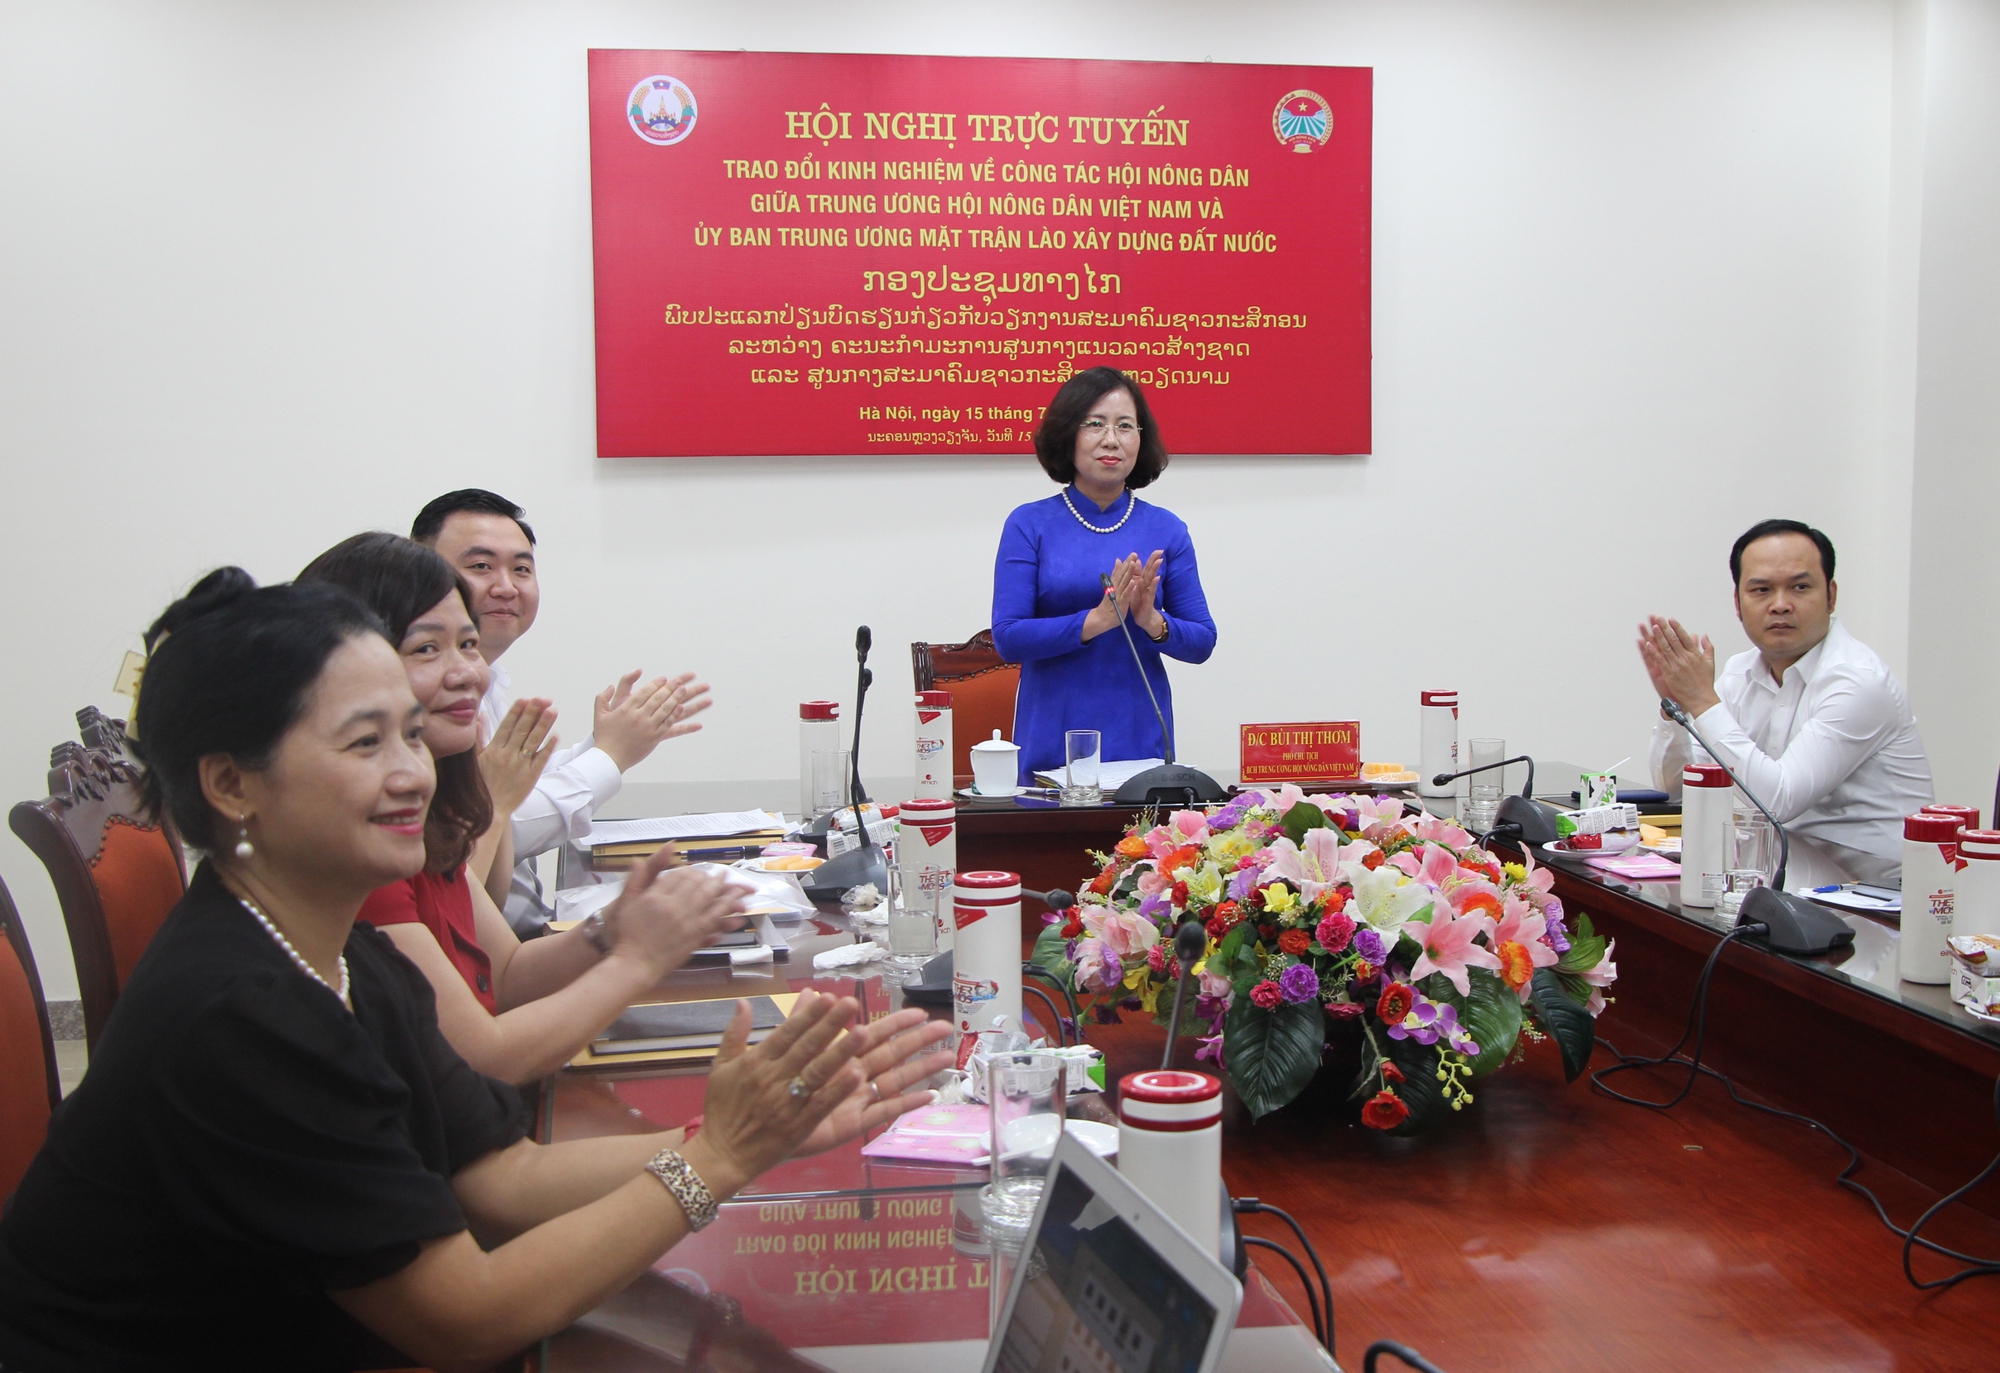 Hội Nông dân Việt Nam tổ chức Hội nghị trao đổi kinh nghiệm công tác Hội với T.Ư Mặt trận Lào xây dựng đất nước - Ảnh 1.